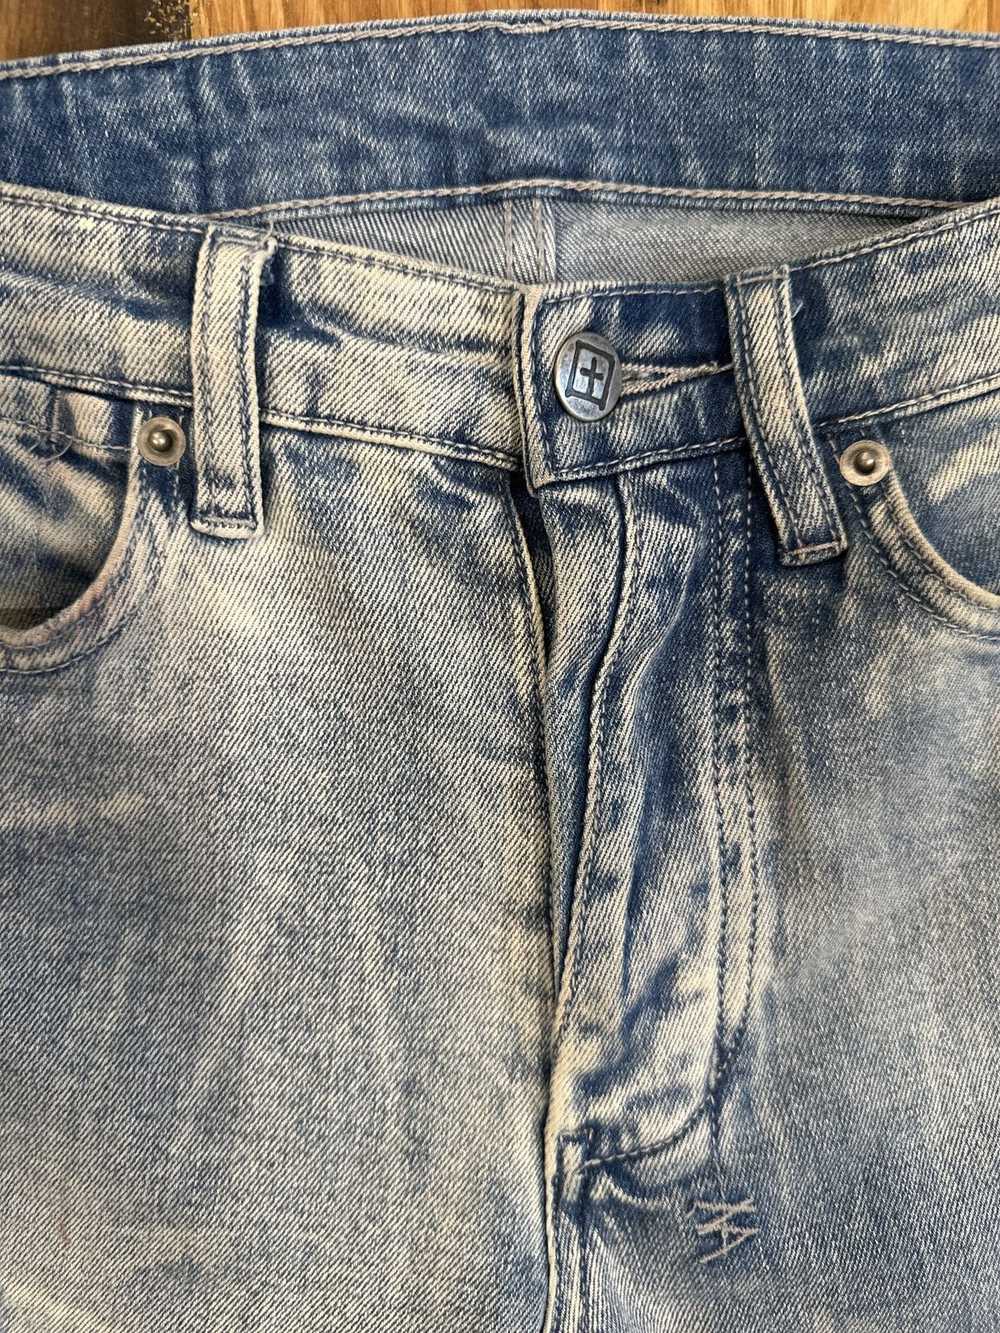 Ksubi Ksubi Cheetah Patch Blue Denim Jeans Size 28 - image 4